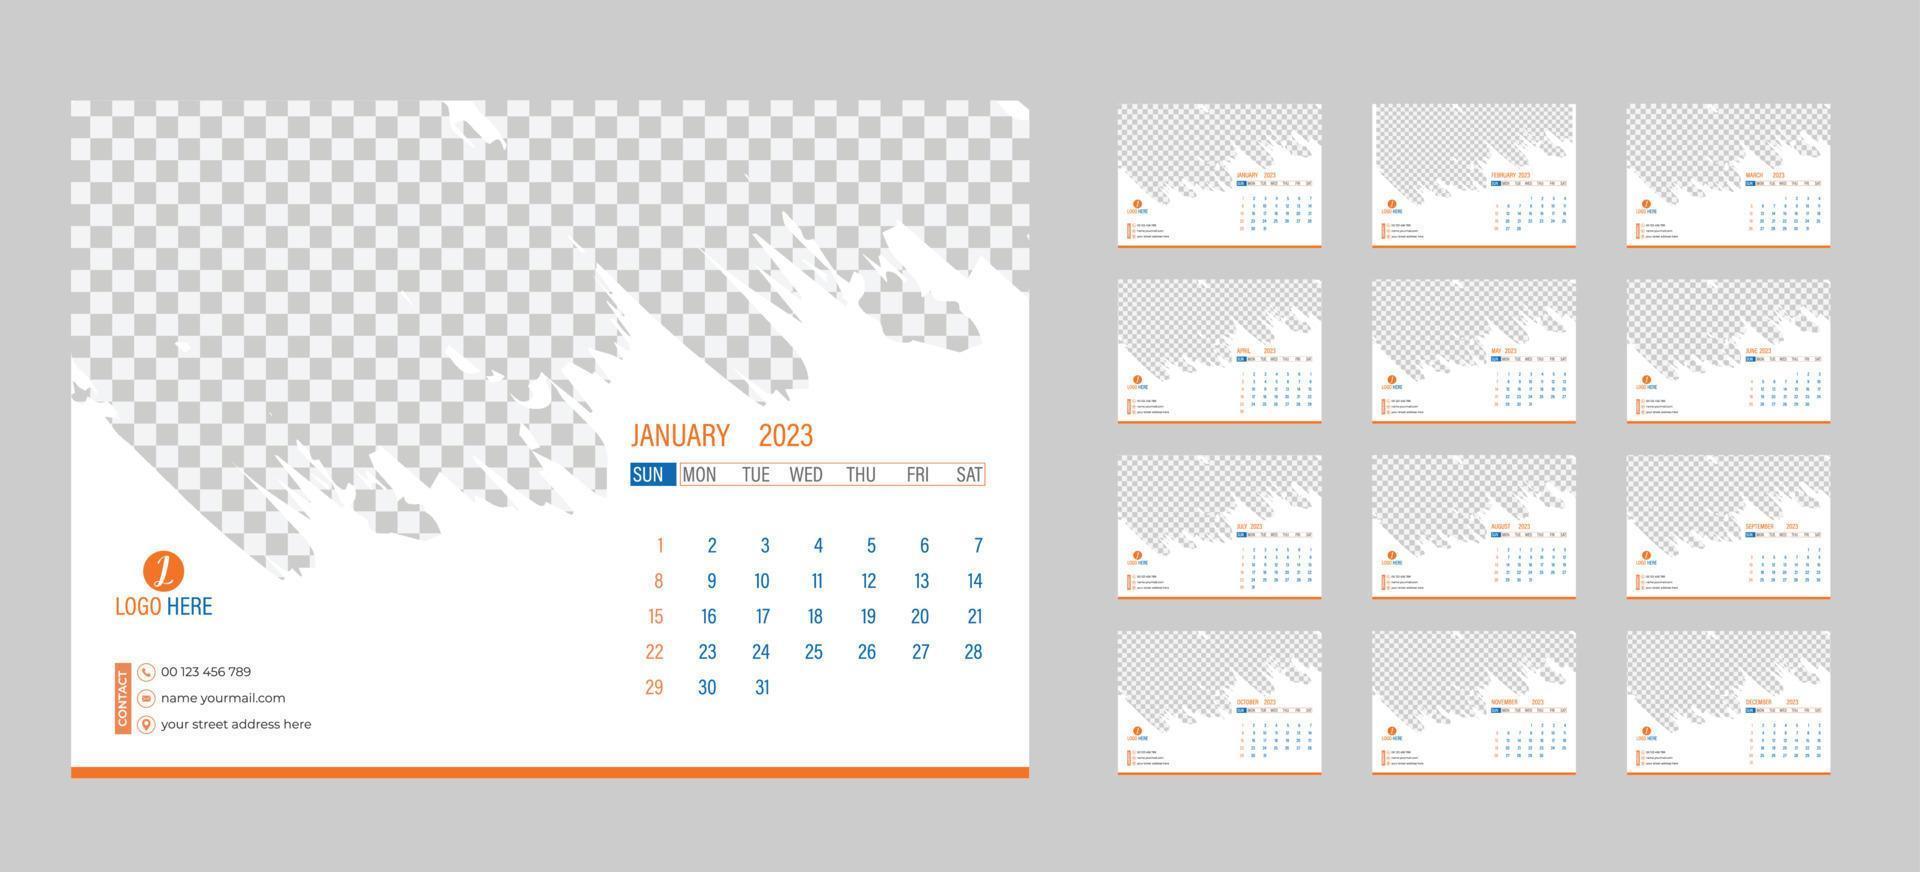 skrivbordet en gång i månaden Foto kalender 2023. enkel en gång i månaden horisontell Foto kalender layout för 2023 år i engelsk. omslag kalender och 12 månader mallar. vecka börjar från måndag. vektor illustration